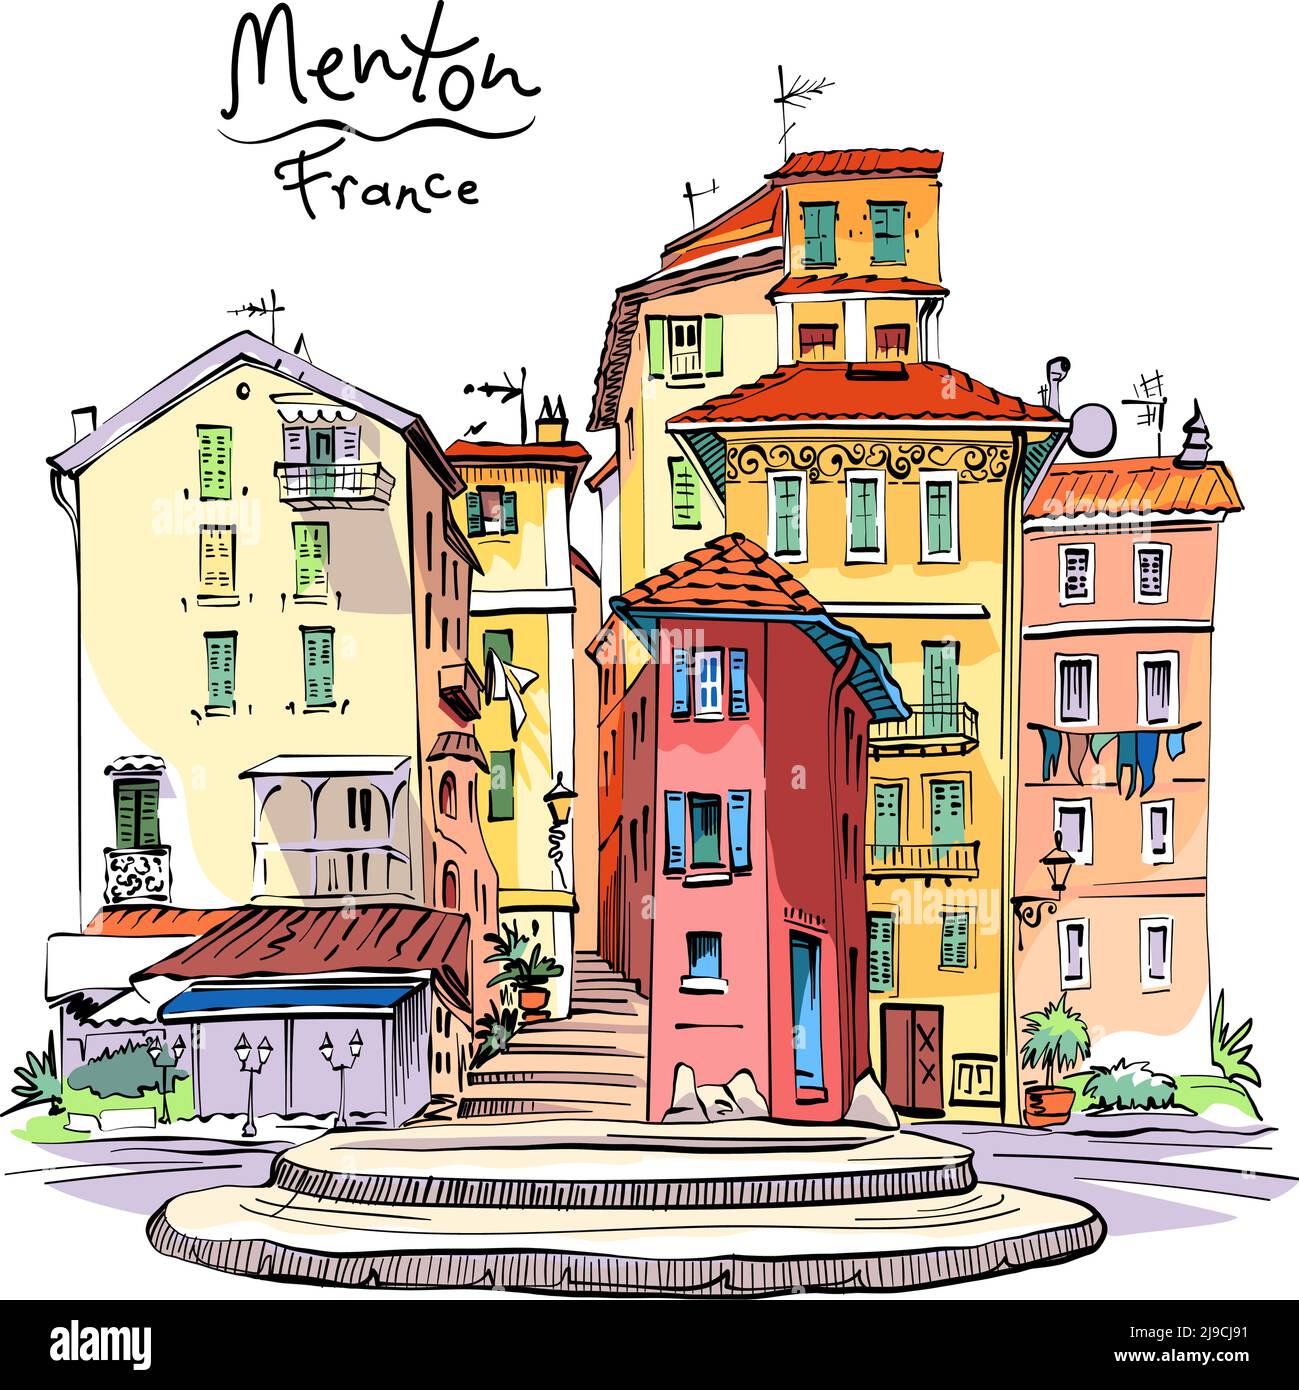 Vektor-Handzeichnung. Typische bunte provenzalische Häuser in Menton, Provence, Frankreich Stock Vektor